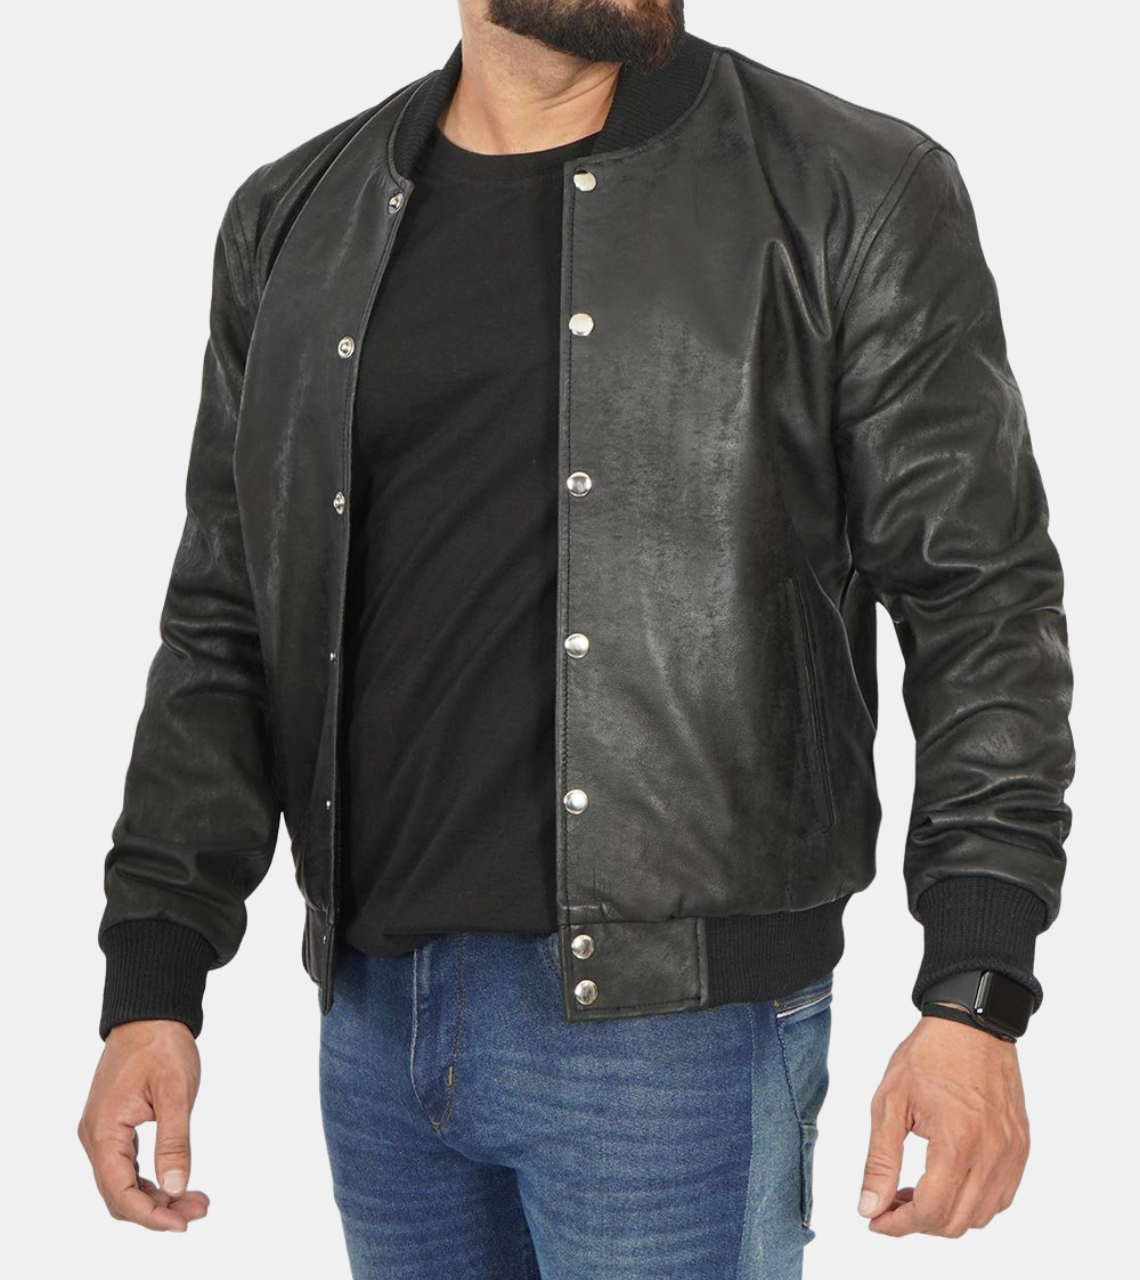  Black Bomber Leather Jacket